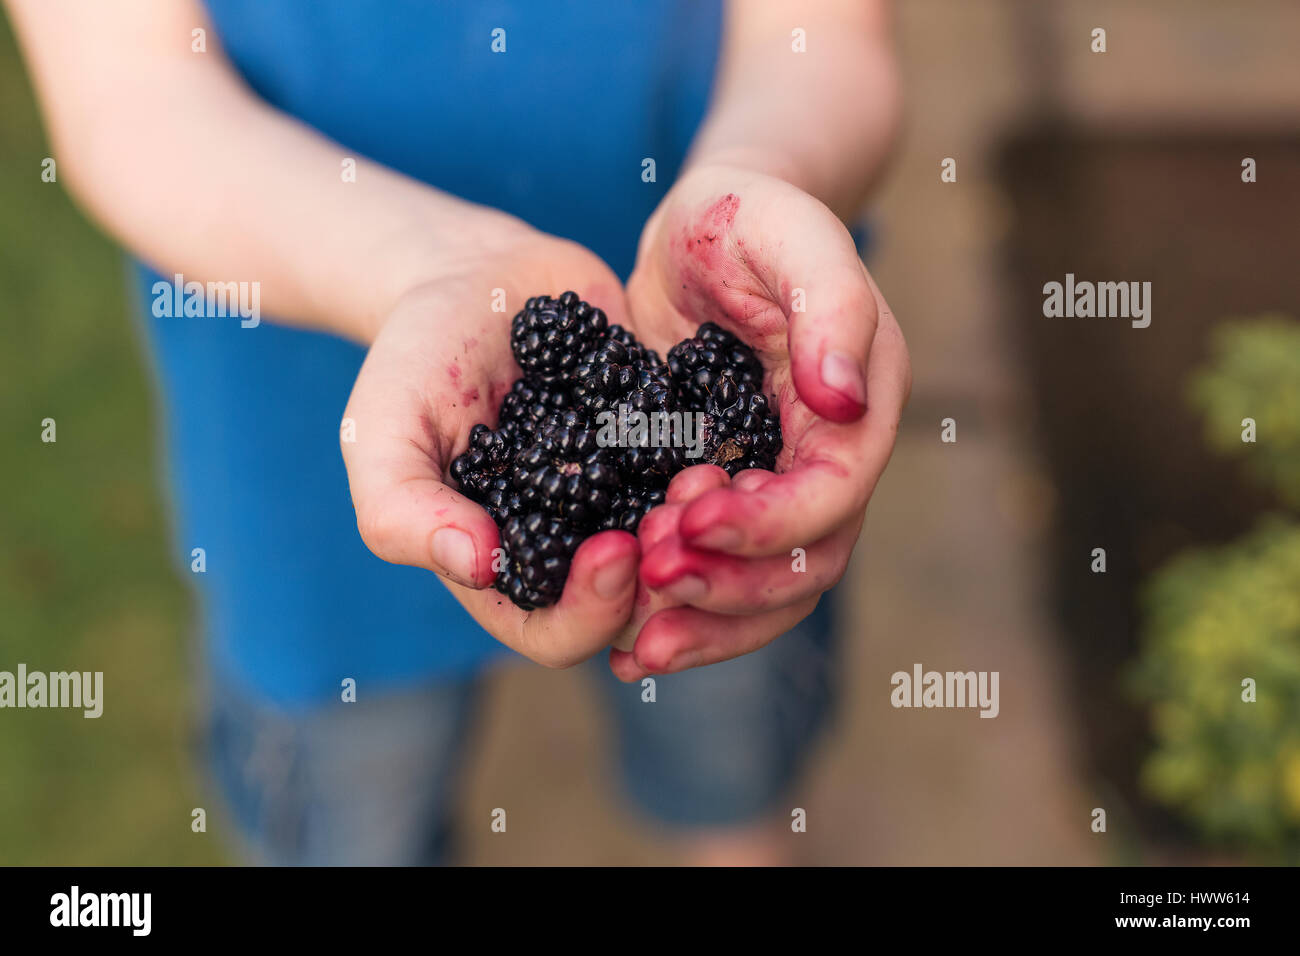 Blackberries in boy's hands Stock Photo